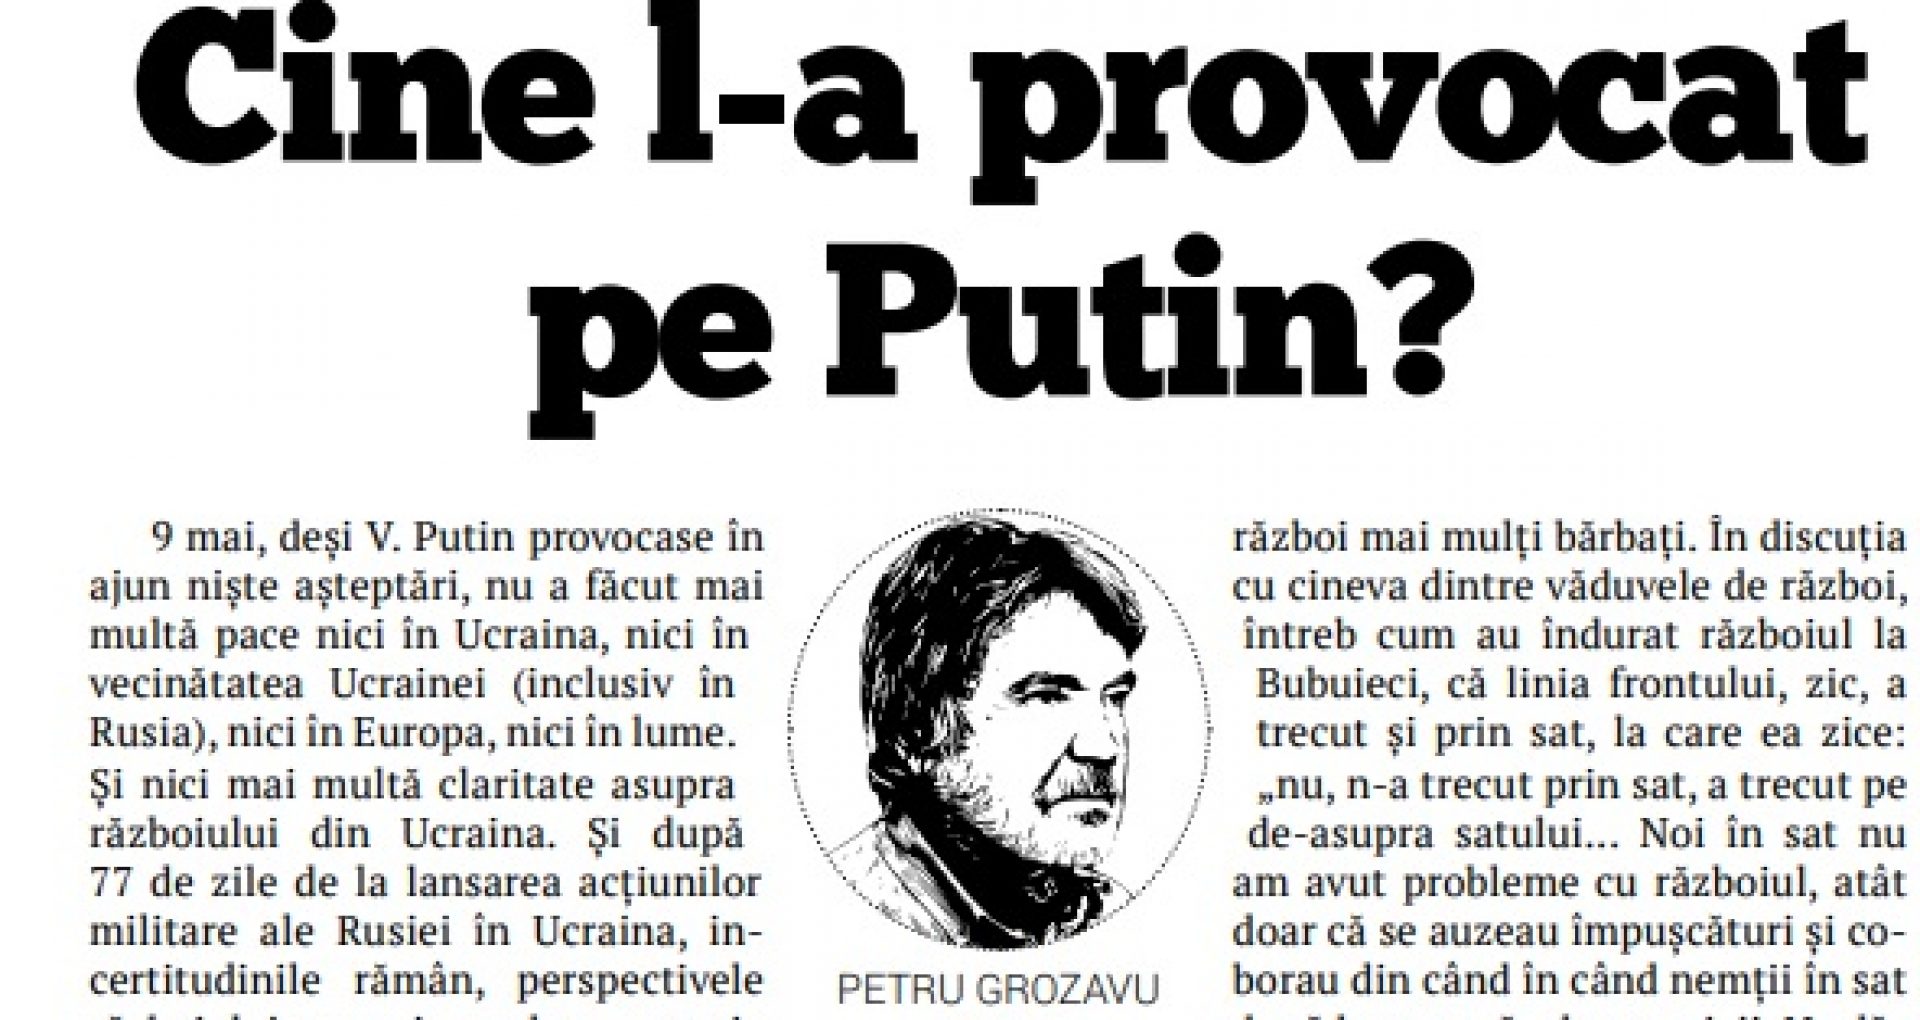 EDITORIAL/ Cine l-a provocat pe Putin?